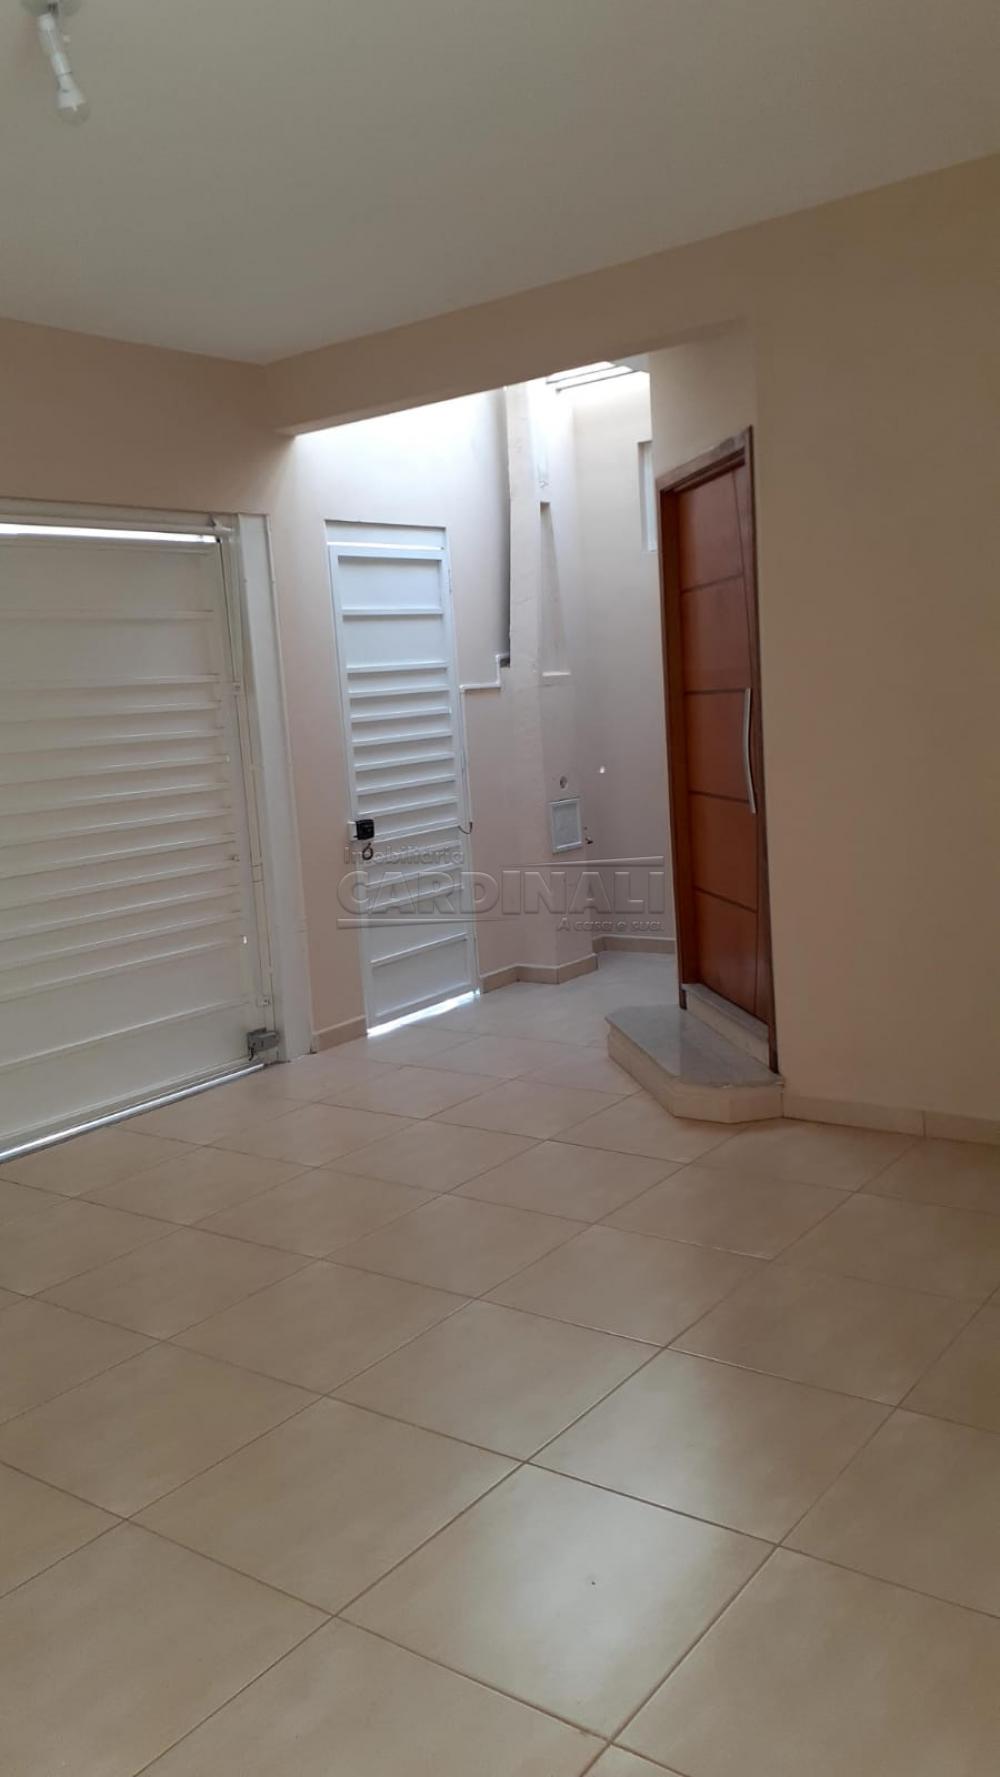 Alugar Casa / Padrão em São Carlos R$ 2.889,00 - Foto 4